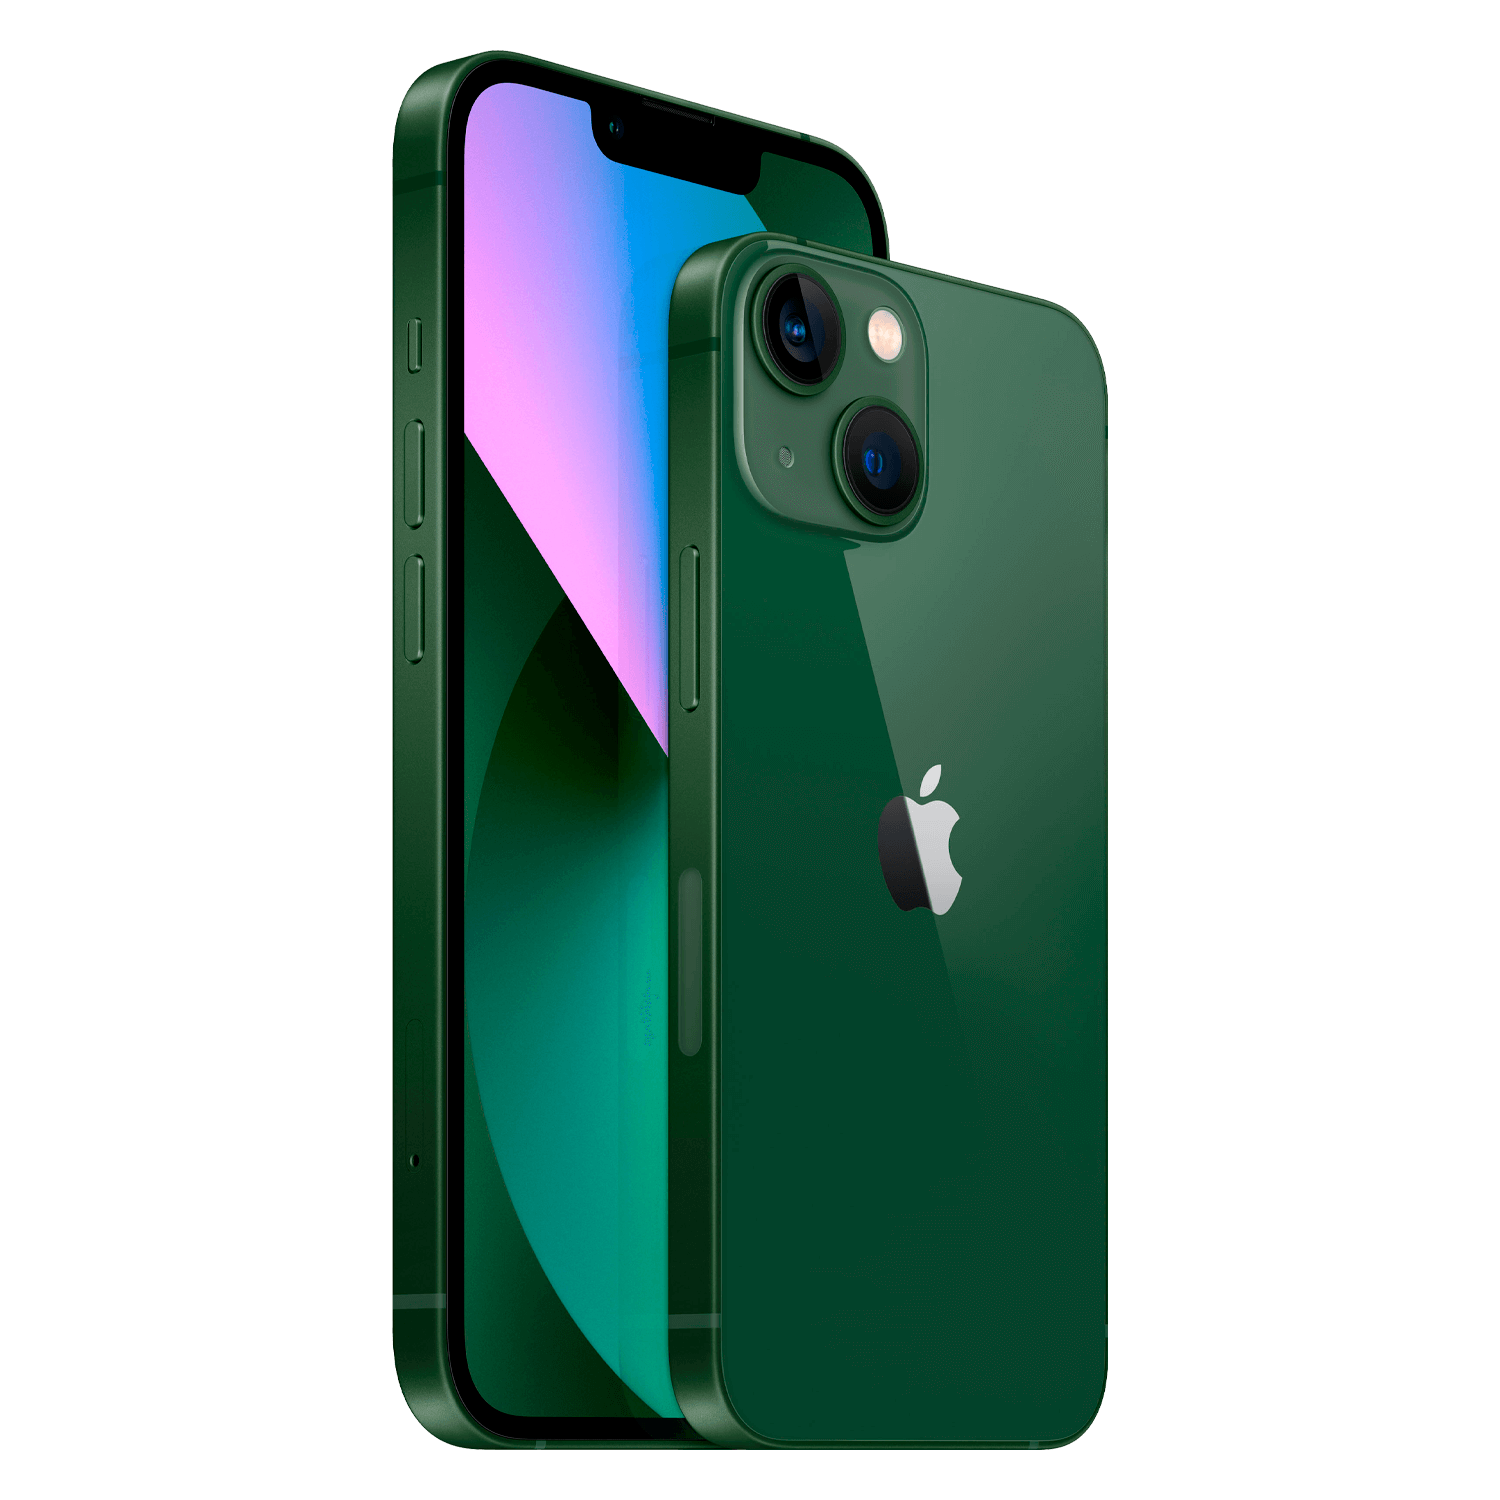 Apple iPhone 13 A2633 HN 128GB 4GB RAM Tela 6.1" - Verde (Deslacrado) (Caixa Danificada)
